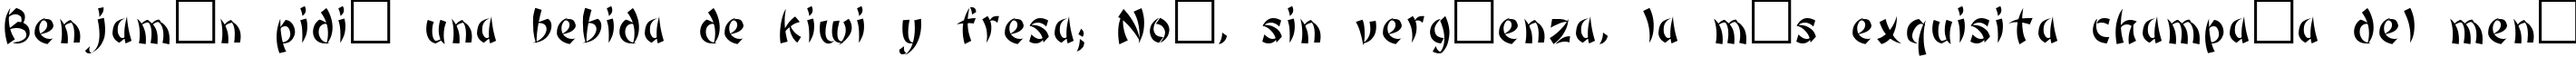 Пример написания шрифтом Bonzai Regular текста на испанском